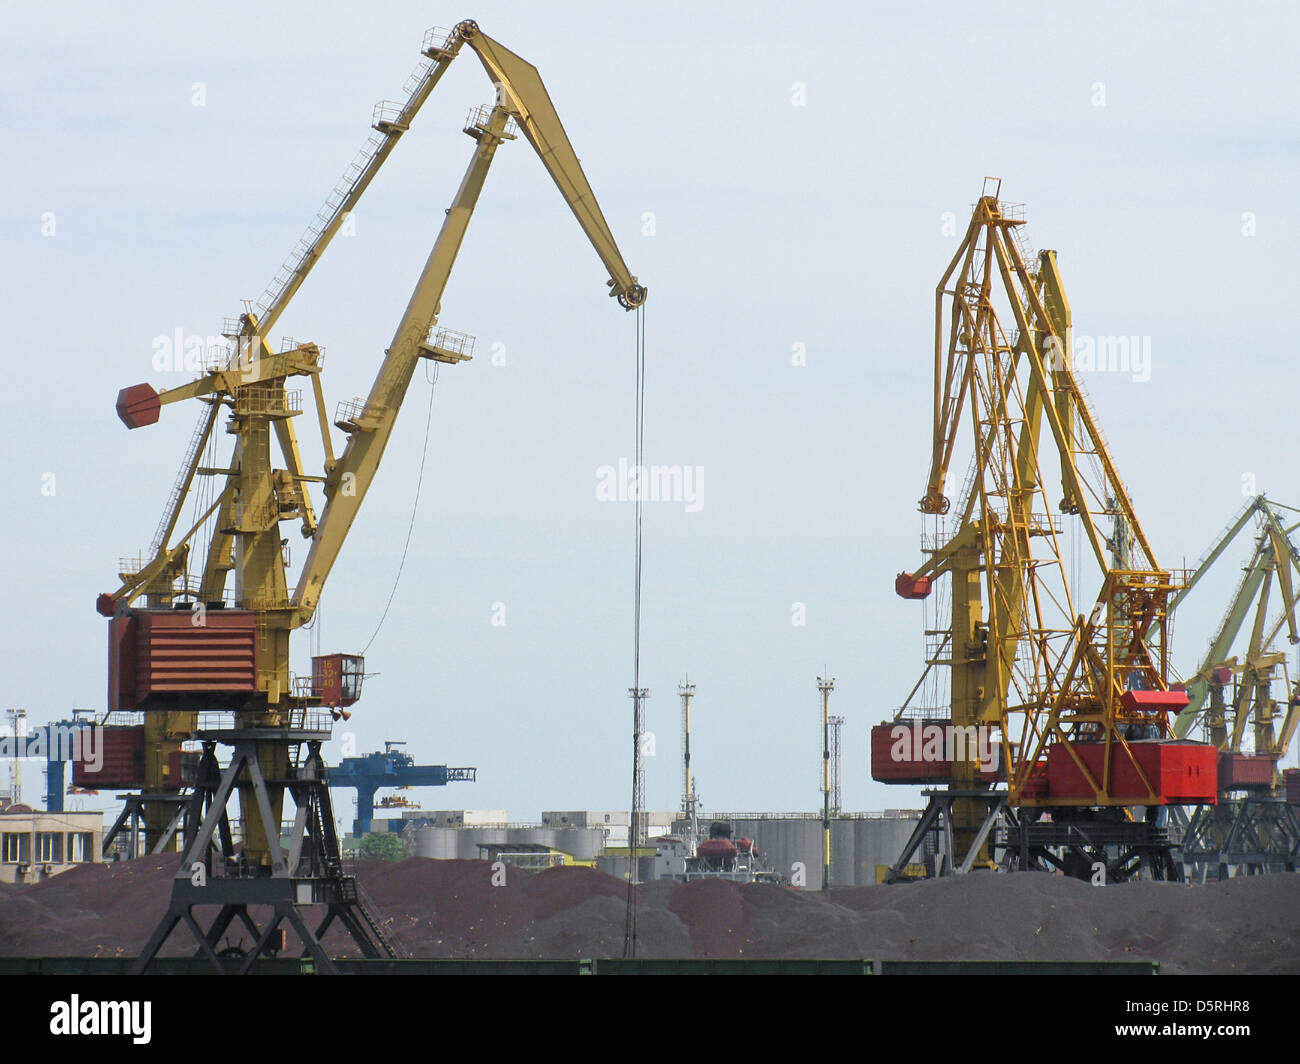 huge cranes in seaport Stock Photo